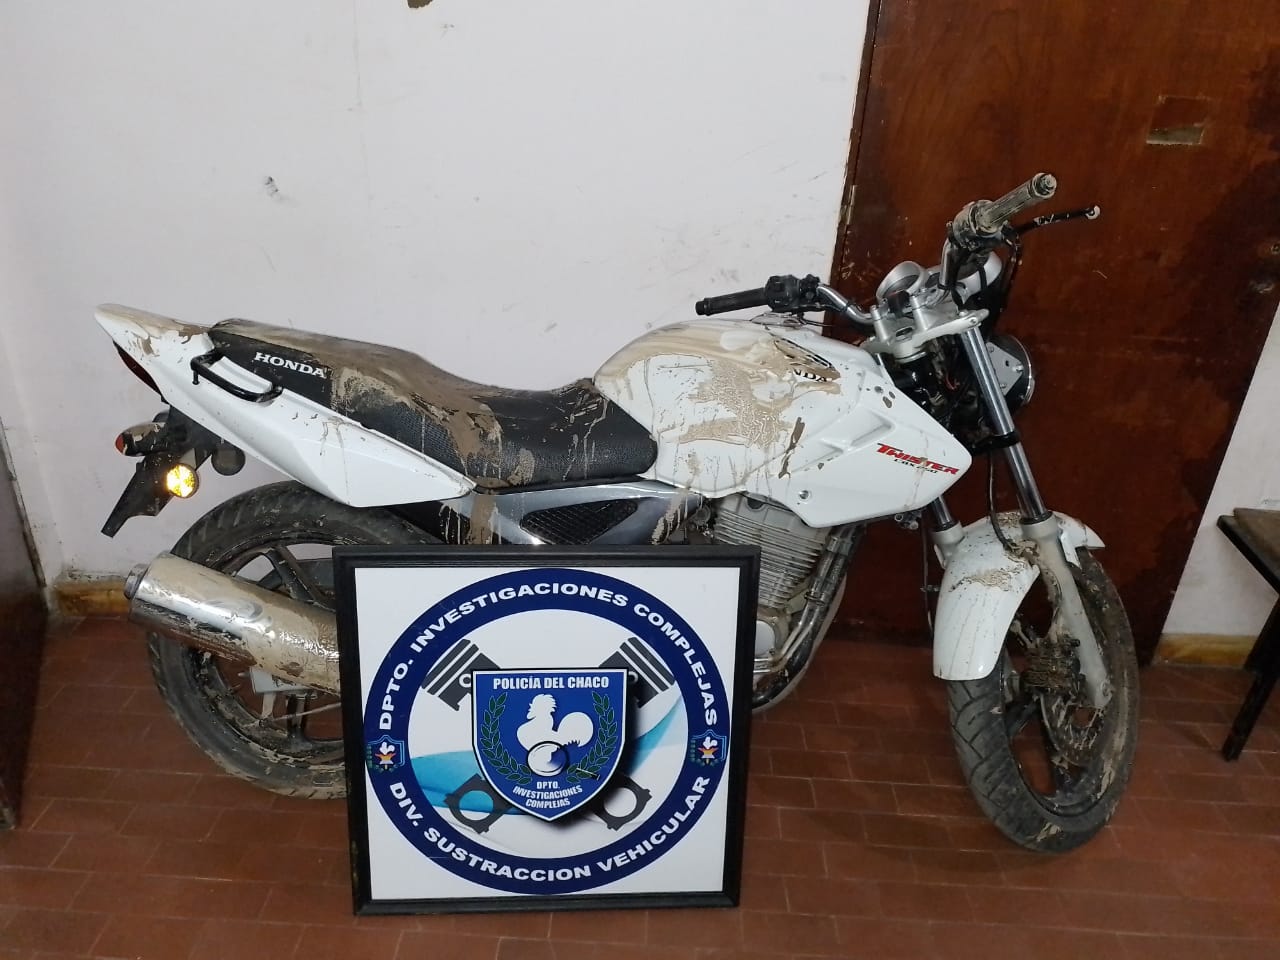 Una moto valuada en $700.000 fue recuperada en Barranqueras